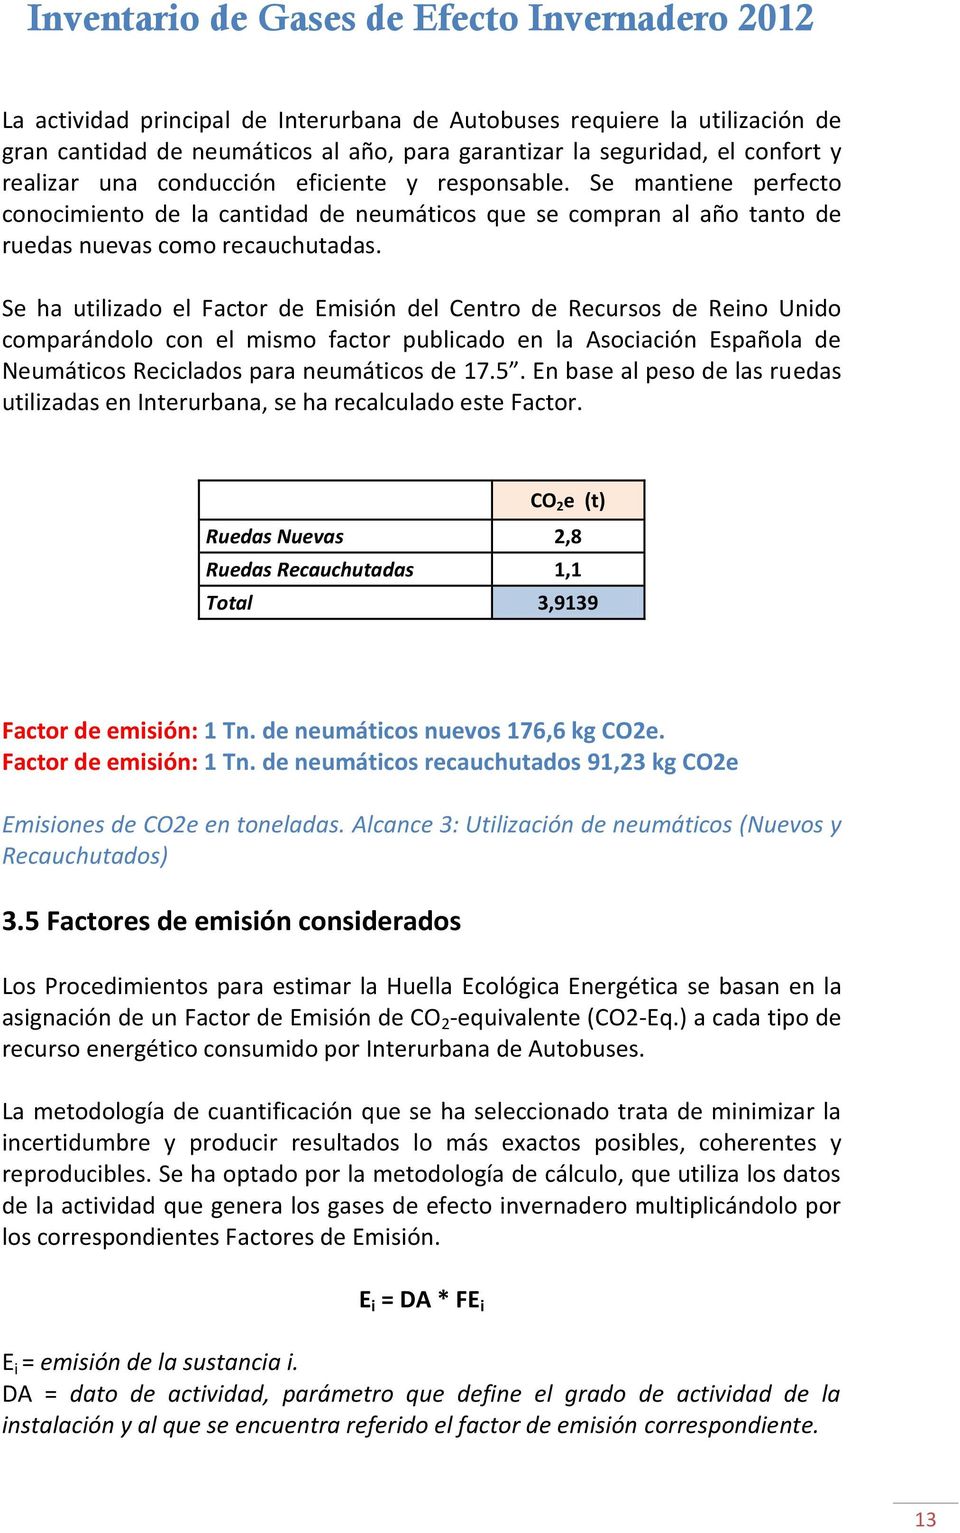 Se ha utilizado el Factor de Emisión del Centro de Recursos de Reino Unido comparándolo con el mismo factor publicado en la Asociación Española de Neumáticos Reciclados para neumáticos de 17.5.